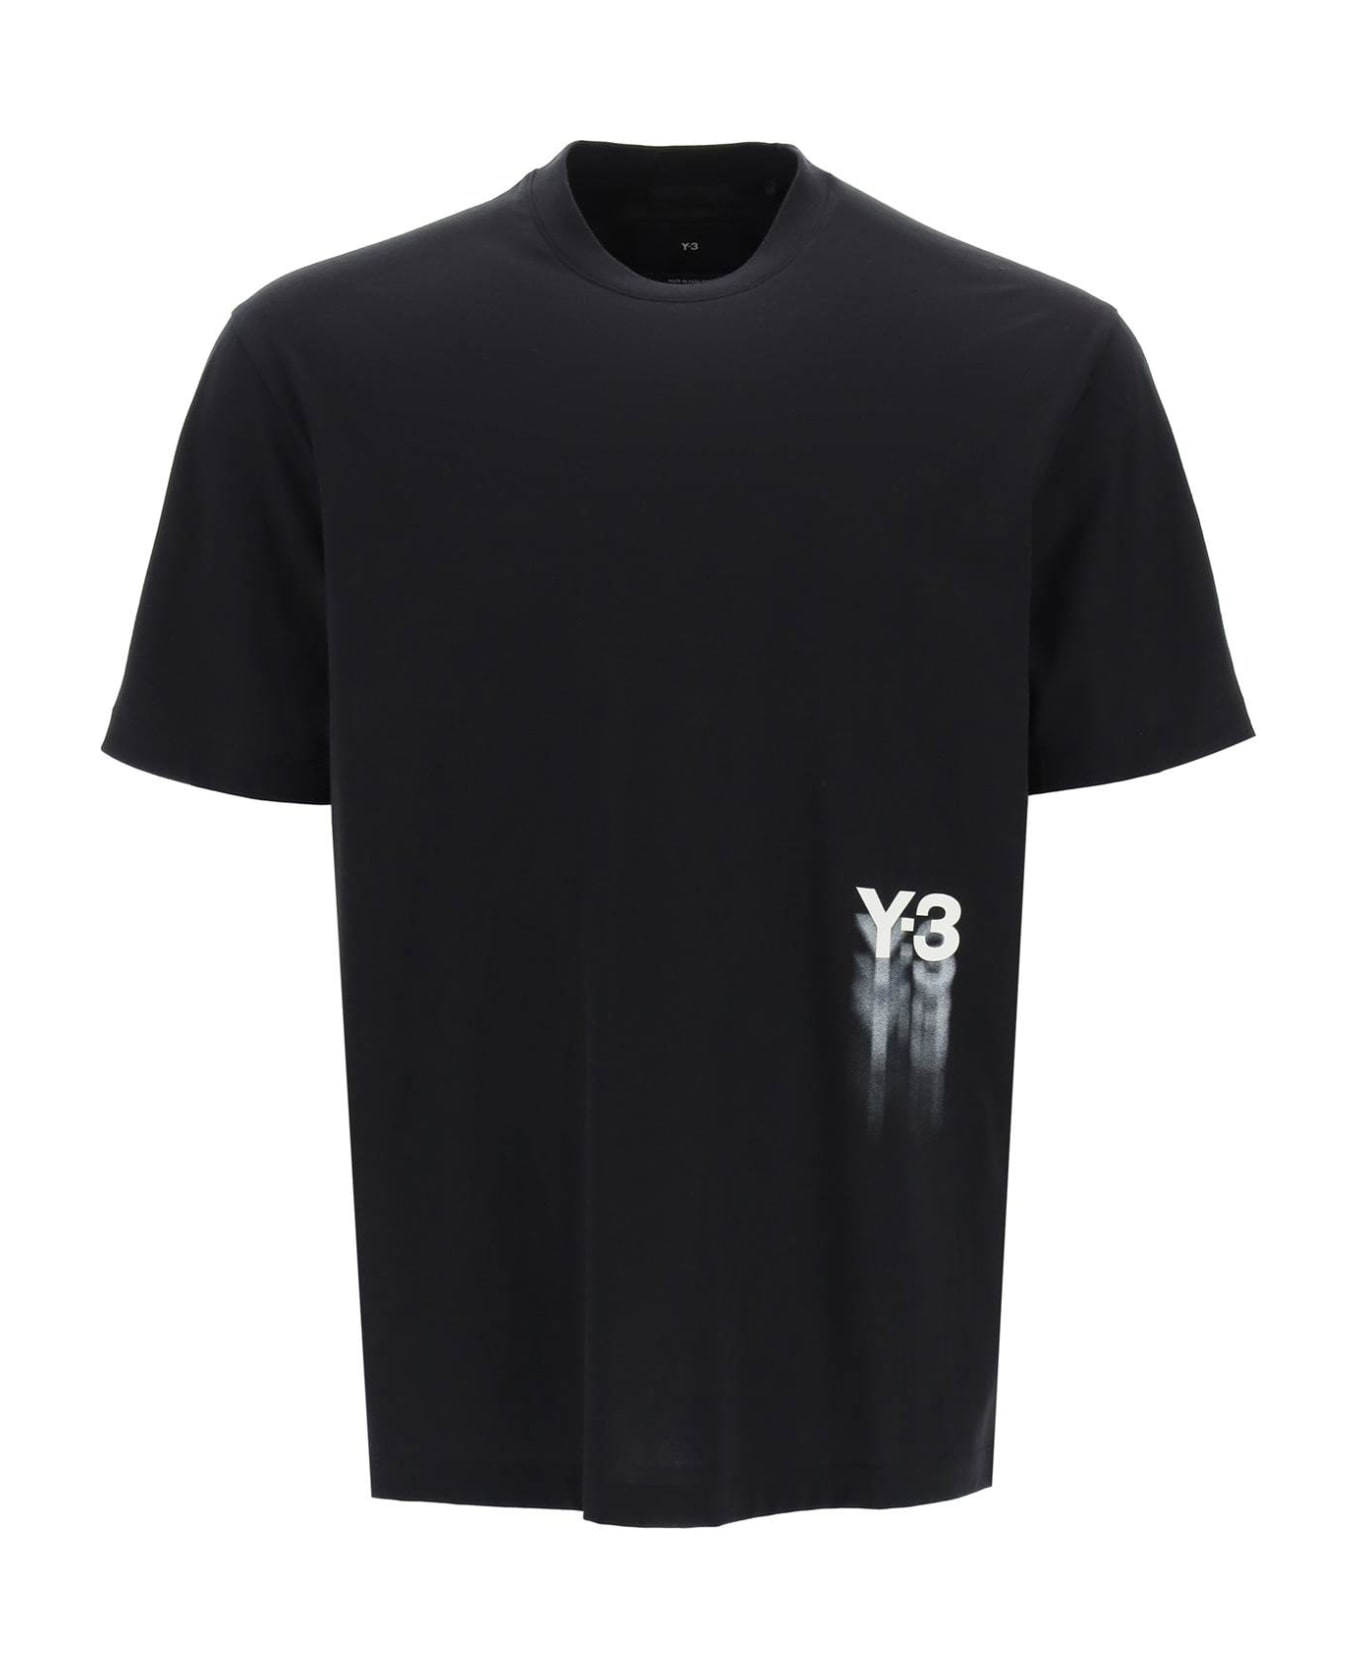 Y-3 Gfx T-shirt - Black Tシャツ